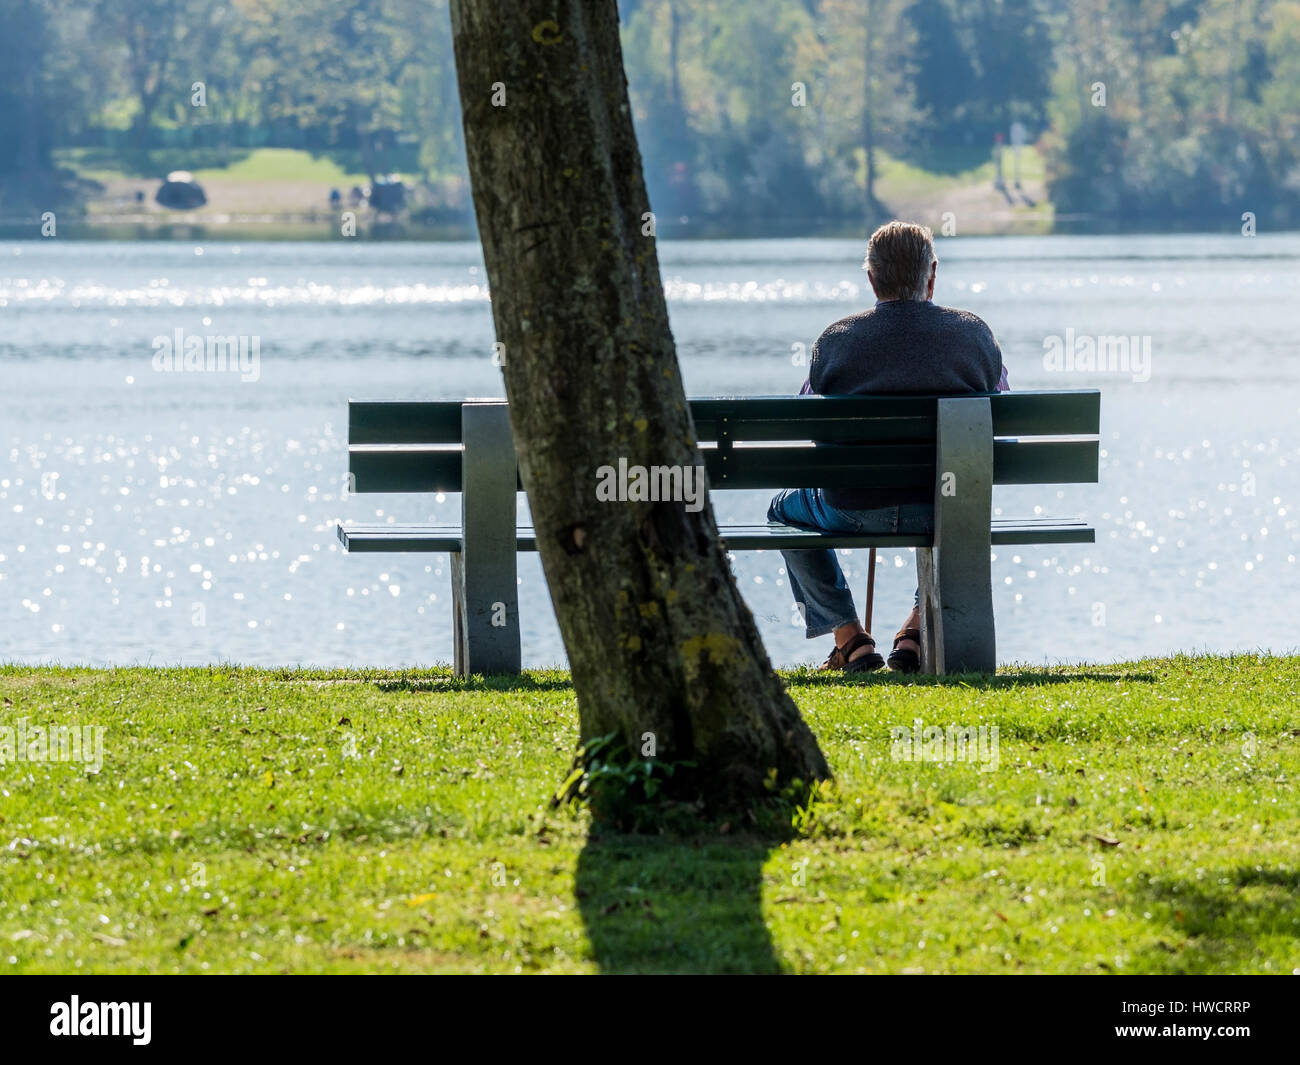 Su un parco-banco con un lago ci si siede solitaria di un uomo più anziano., auf einer Parkbank bei einem vedere einsam sitzt ein älterer Mann. Foto Stock